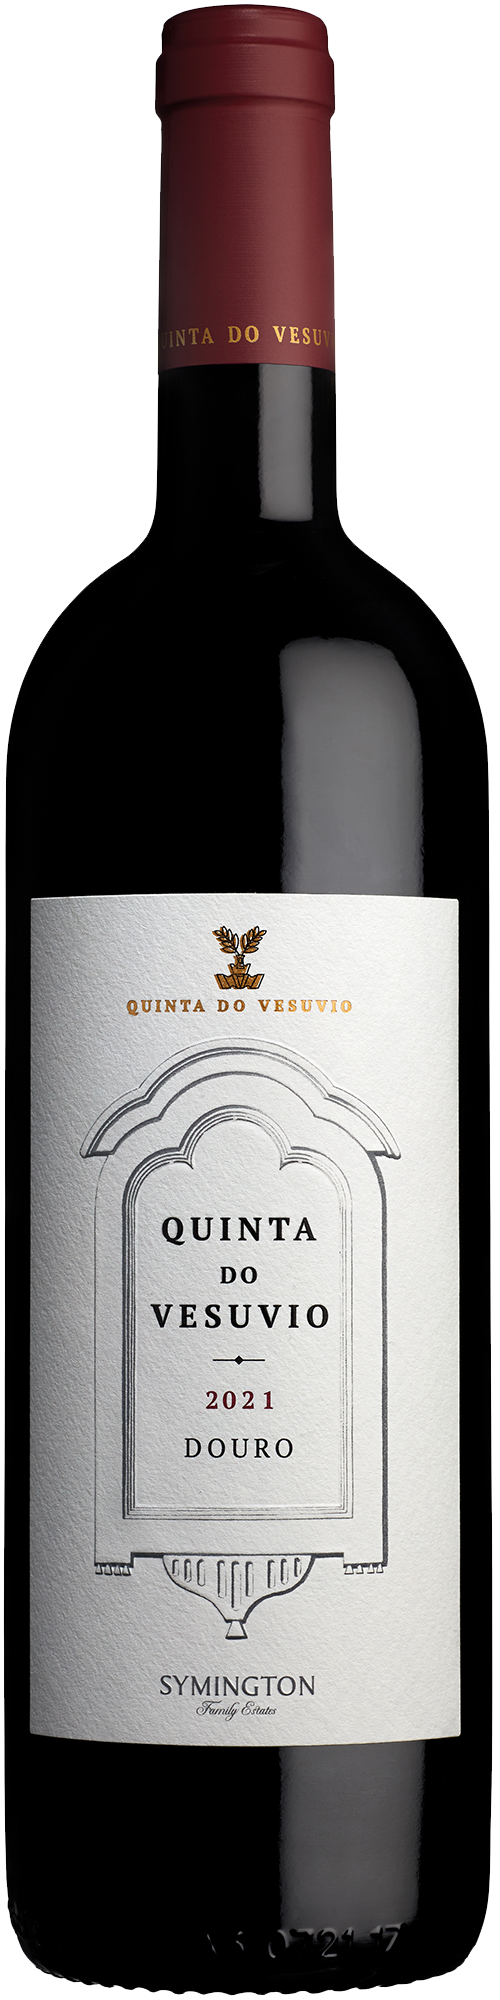 Product Image for QUINTA DO VESUVIO DOURO DOC 2021